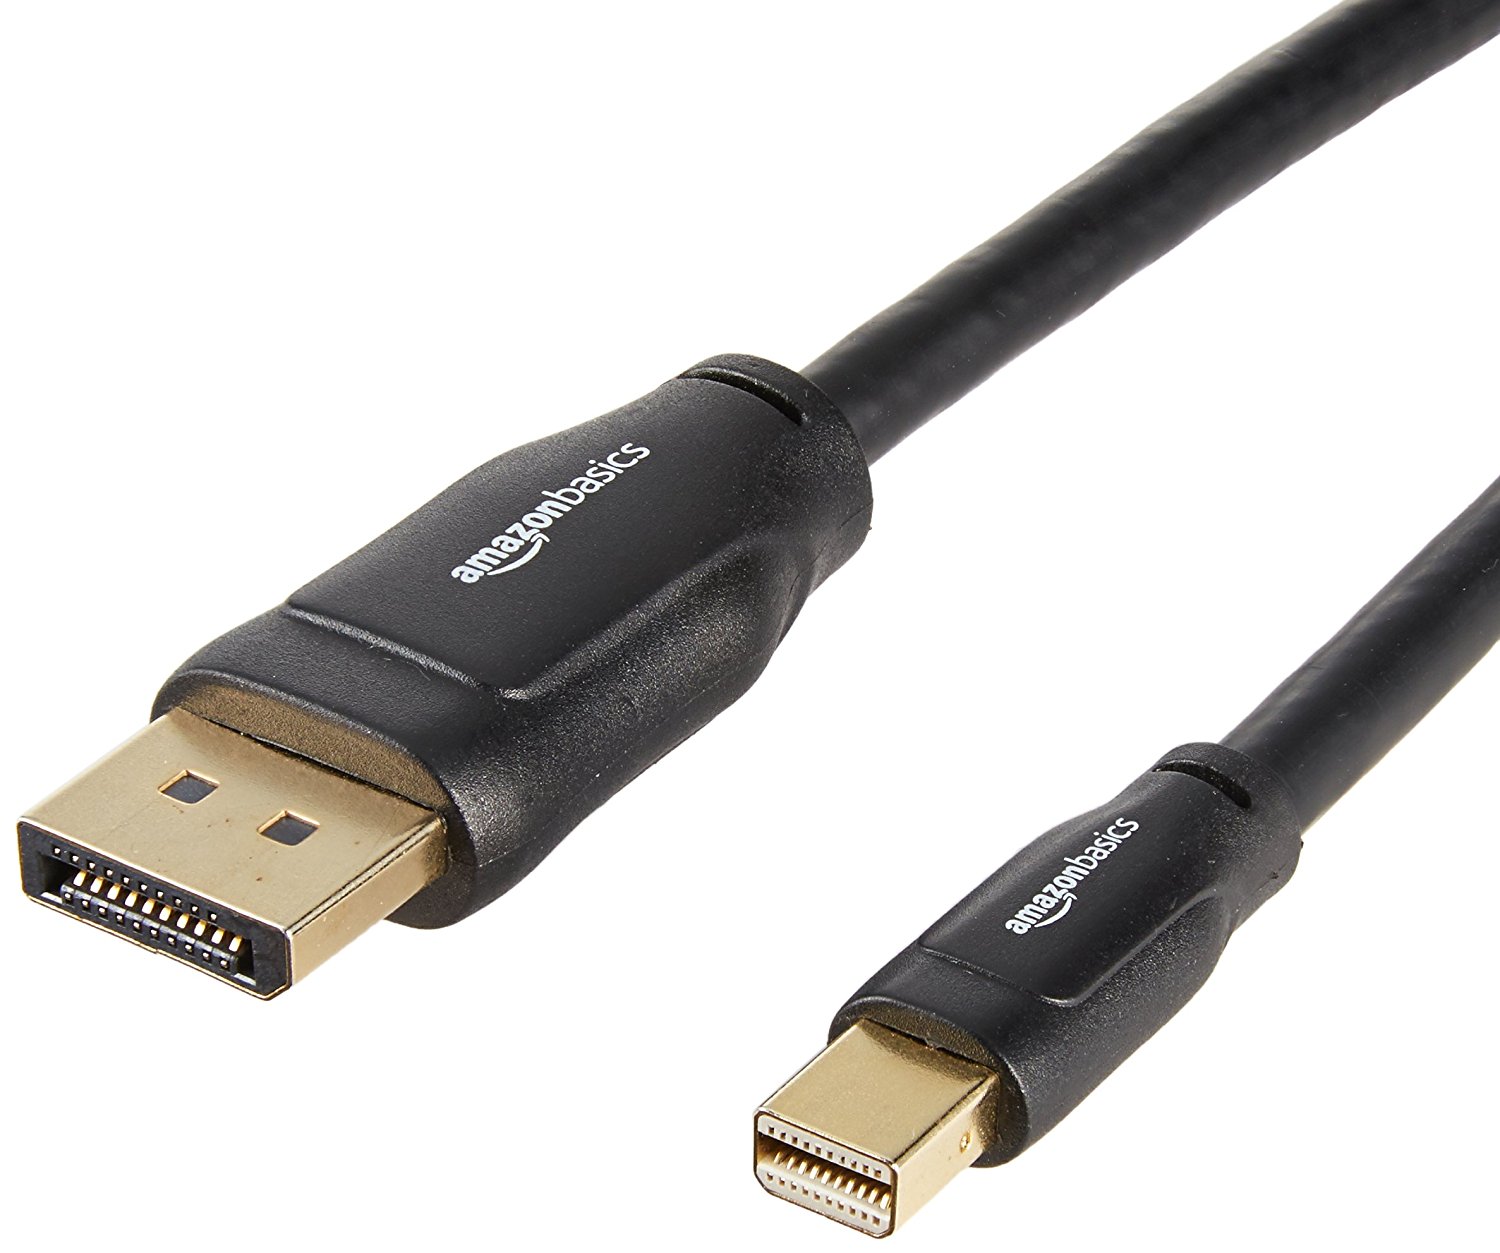 AmazonBasics Mini DisplayPort to DisplayPort Cable - 6 Feet